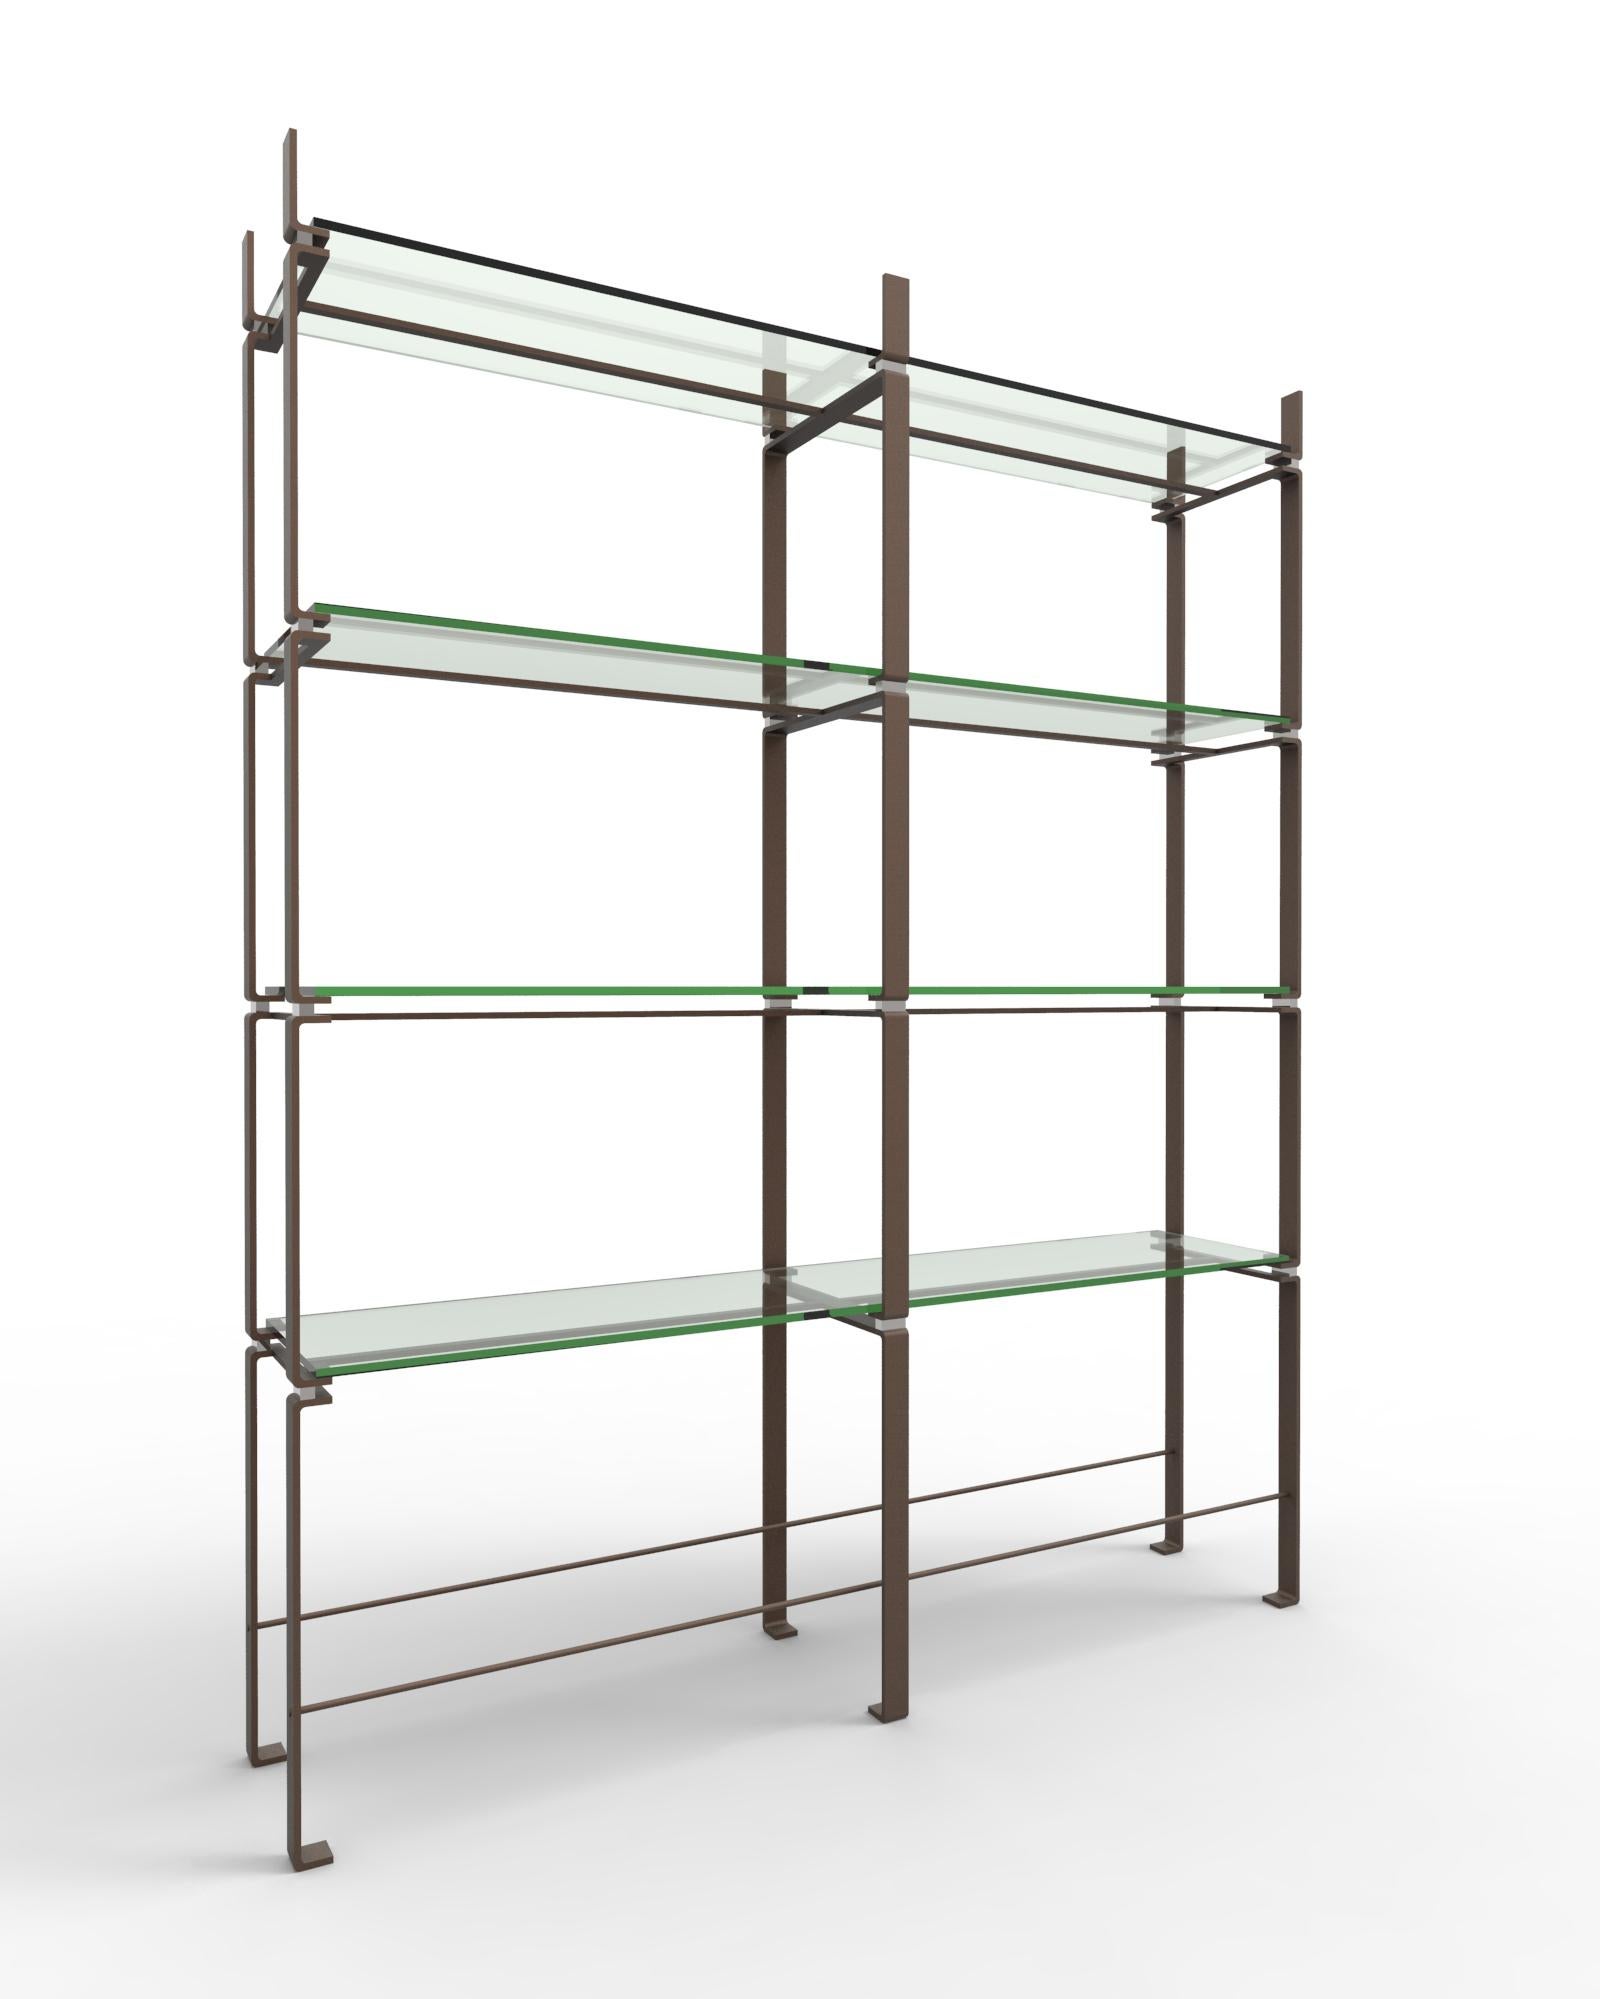 Post-Modern Double Etagere Shelves by Gentner Design